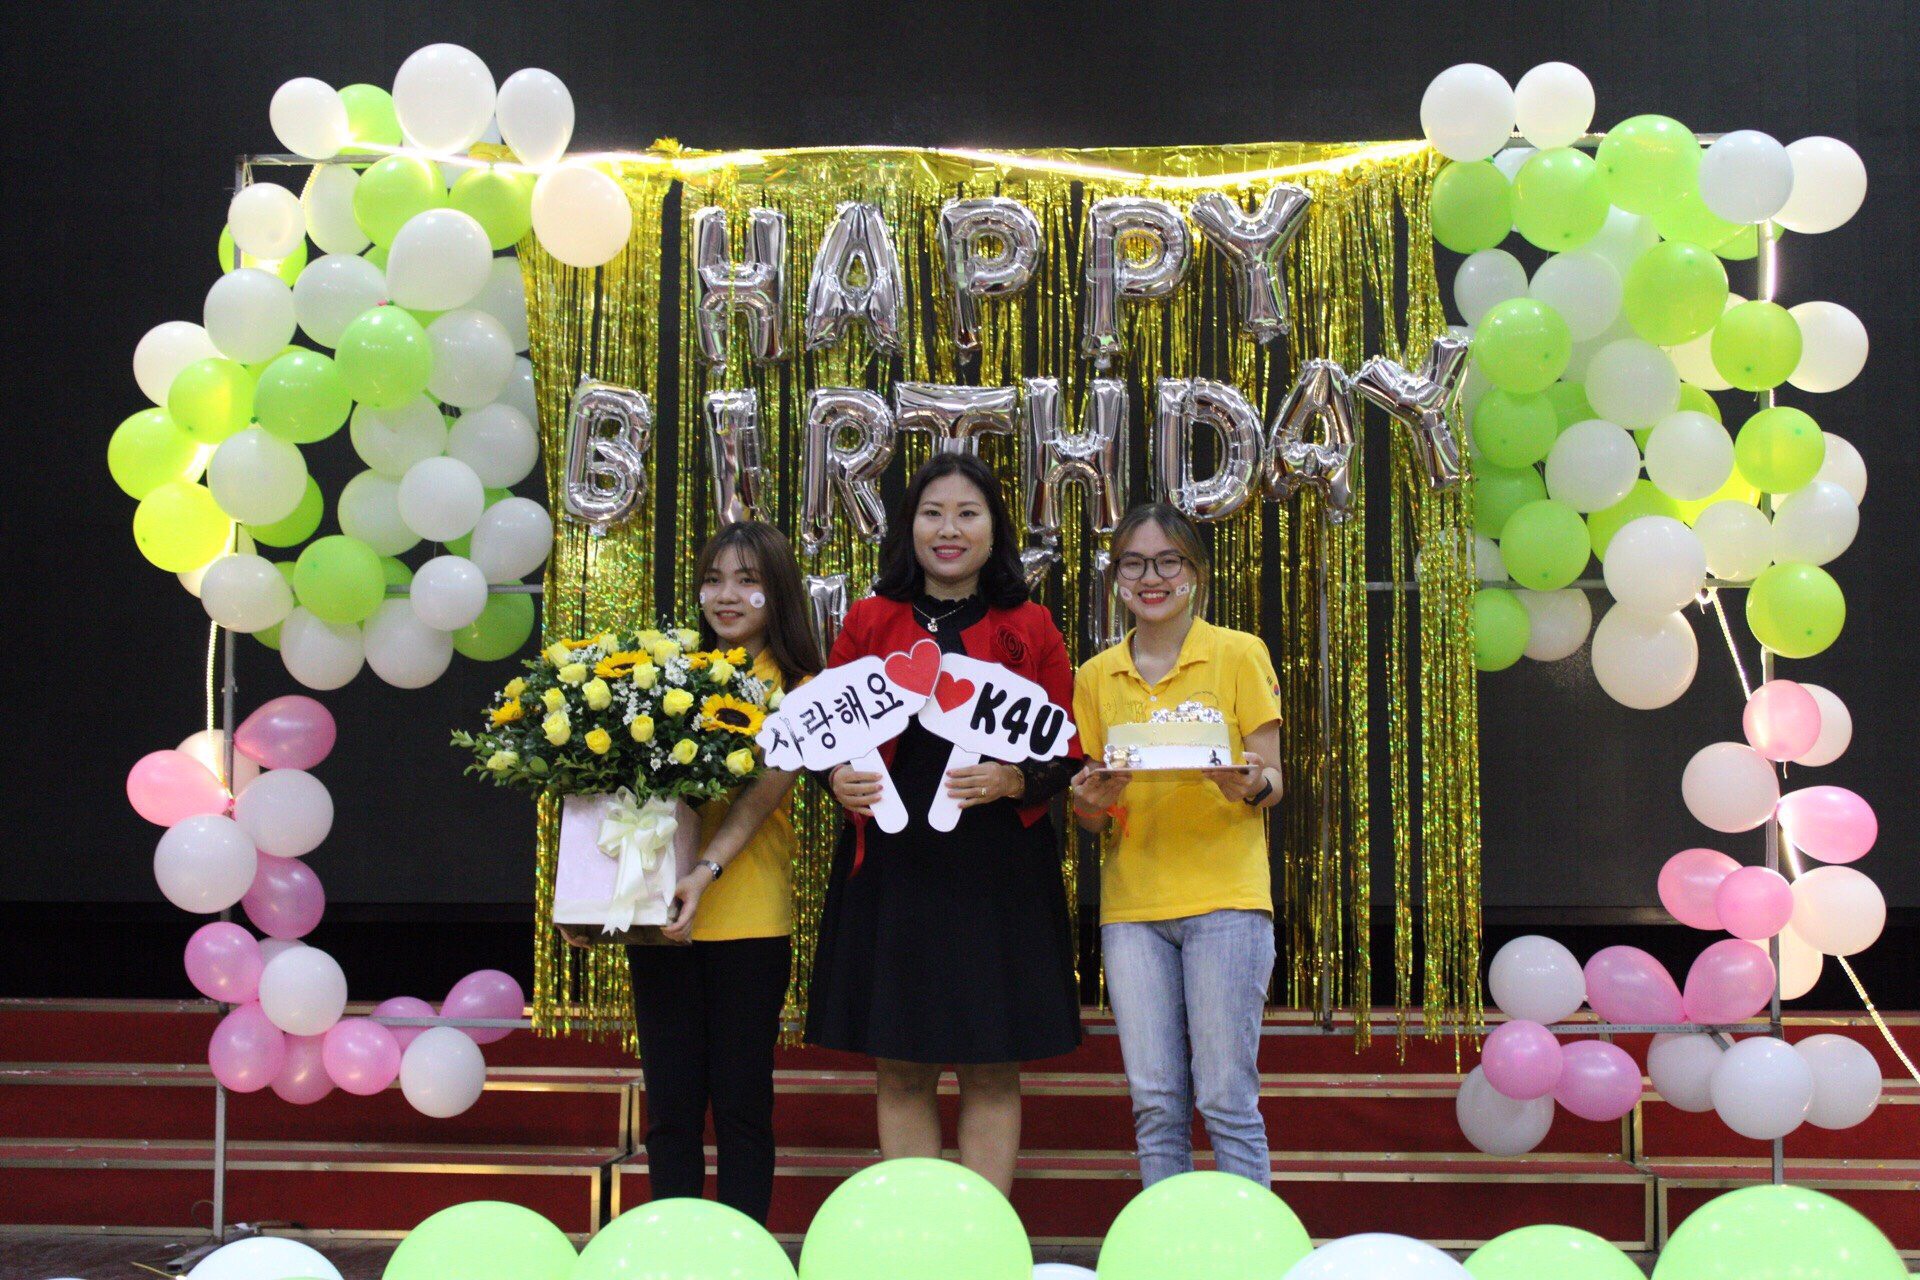 Câu lạc bộ Tiếng Hàn Quốc K4U - HaUI kỷ niệm sinh nhật 2 năm tuổi